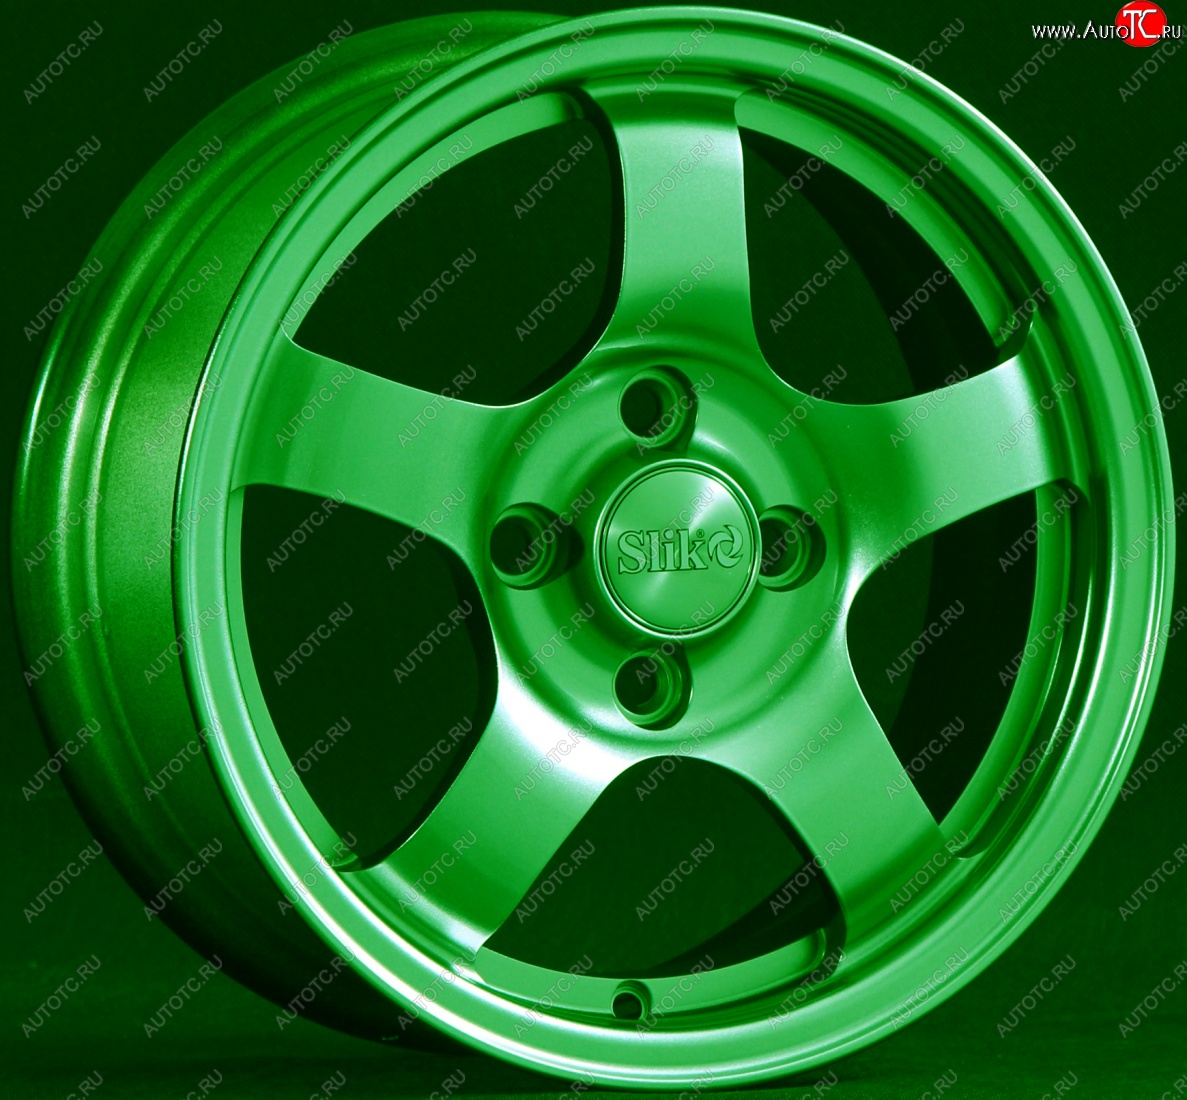 12 799 р. Кованый диск Slik Classik 6x14 (Зелёный GREEN)   (Цвет: Зелёный GREEN)